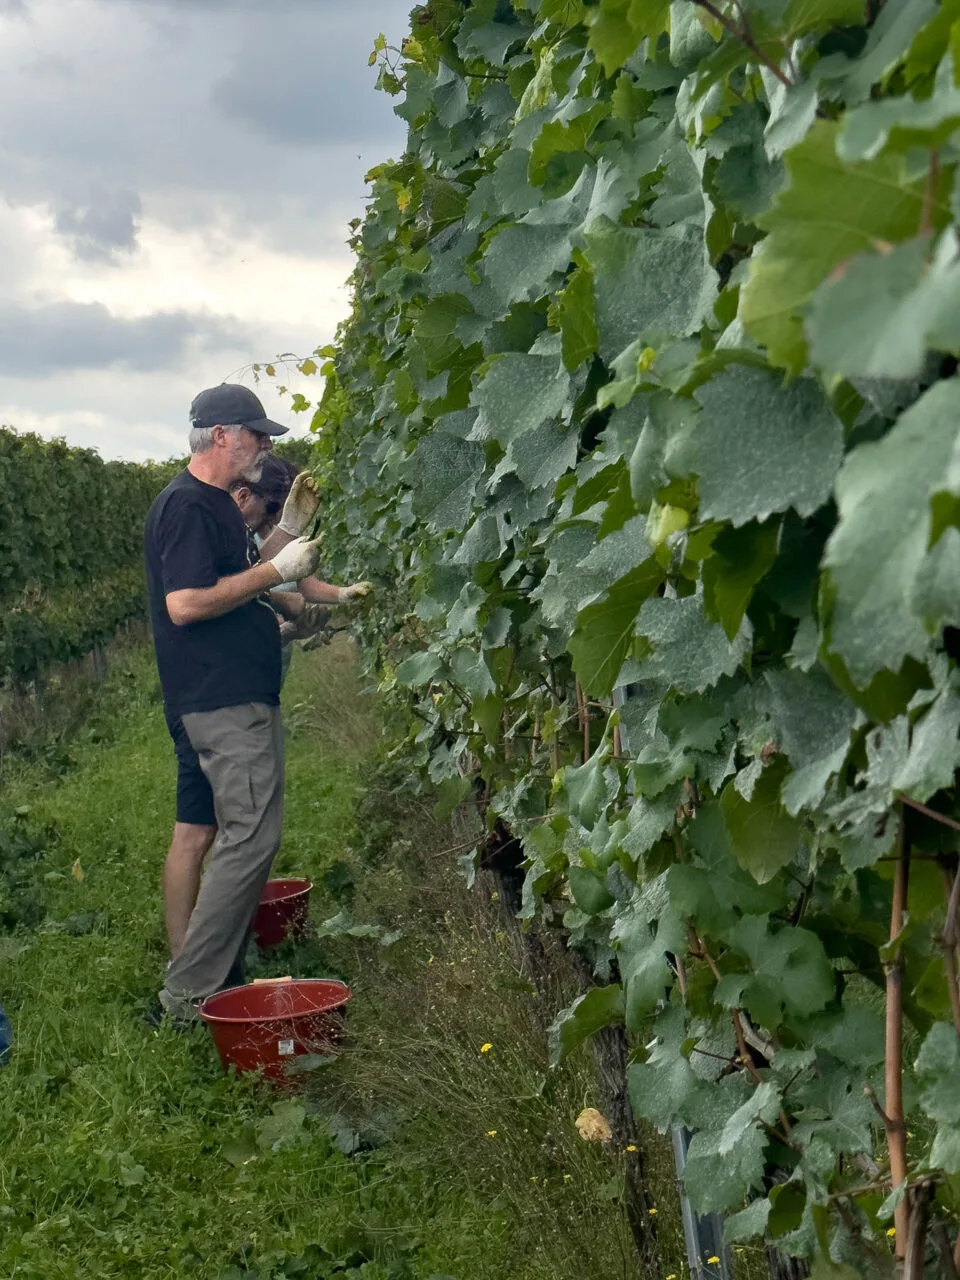 Jim picks grapes in Germany.